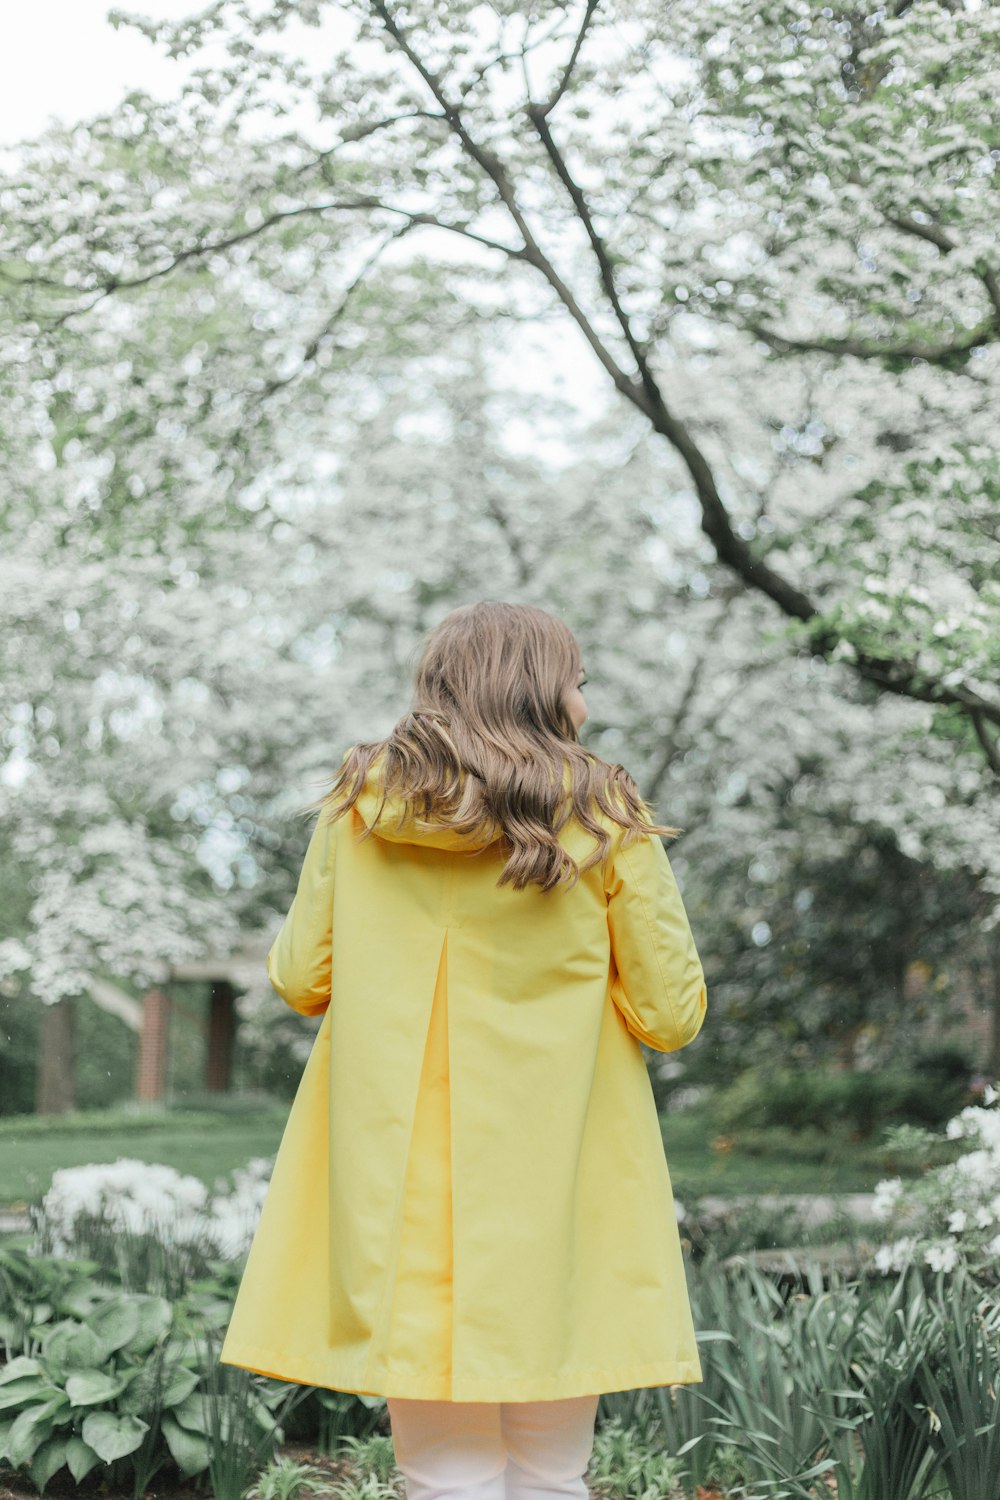 femme en manteau jaune debout près des arbres pendant la journée